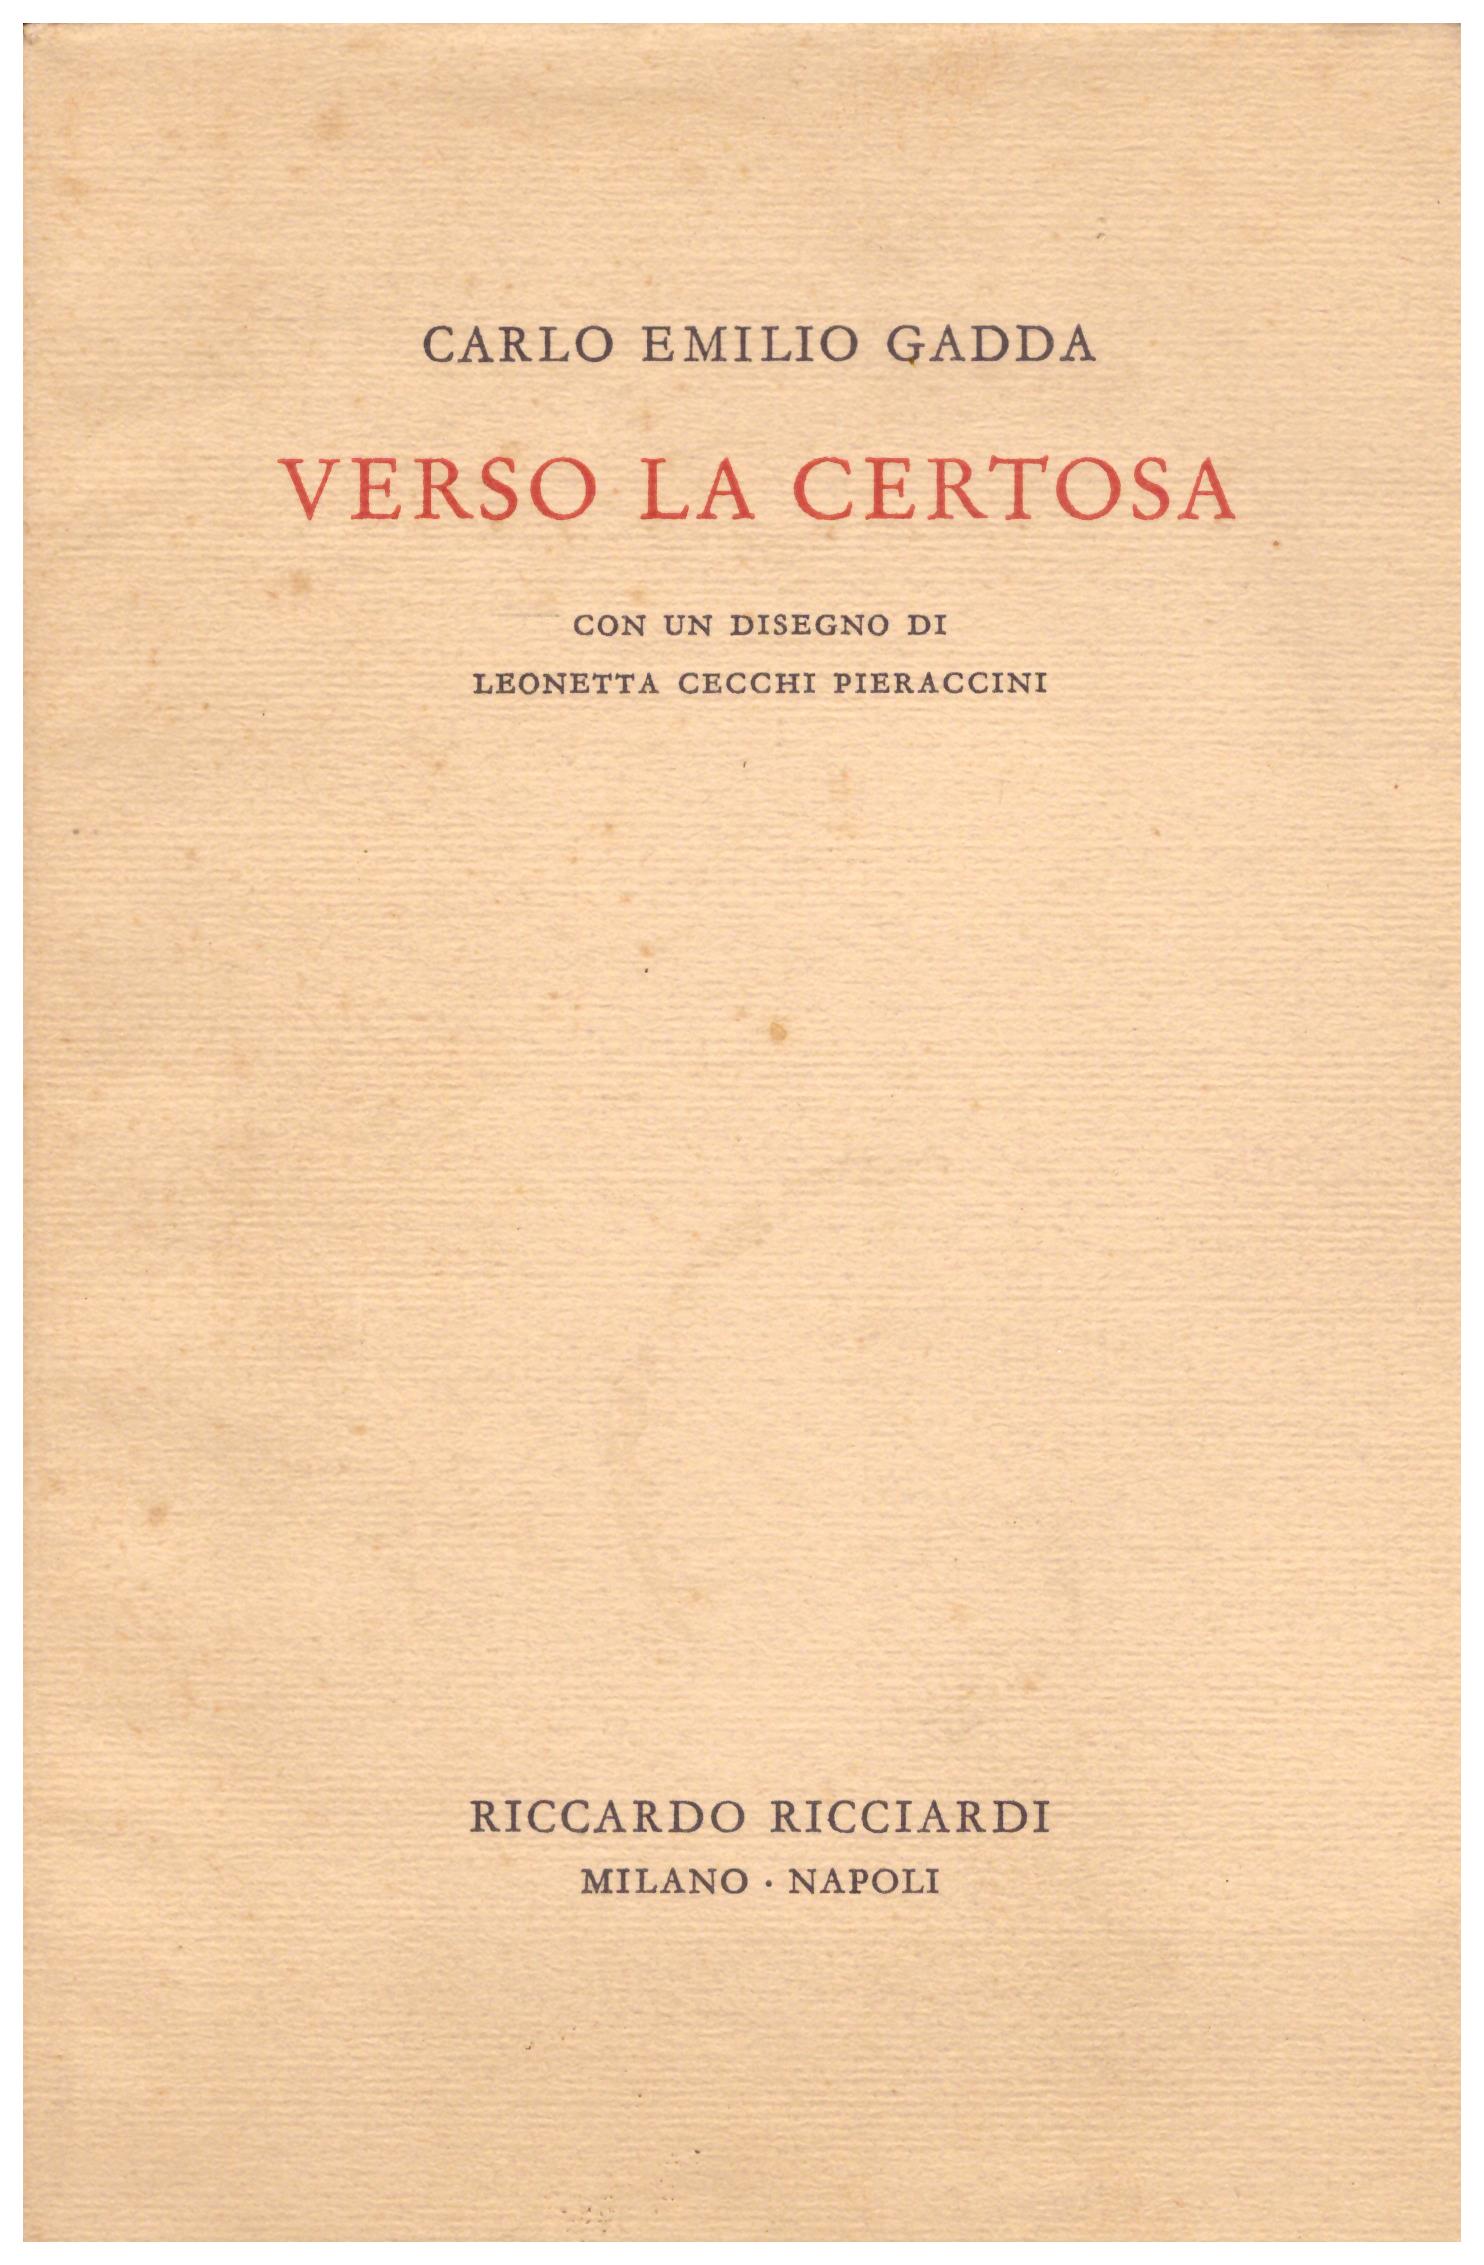 Titolo: Verso la certosa Autore: Carlo Emilio Gadda  Editore: Riccardo Ricciardi, verona presso stamperia Valdonega 1961